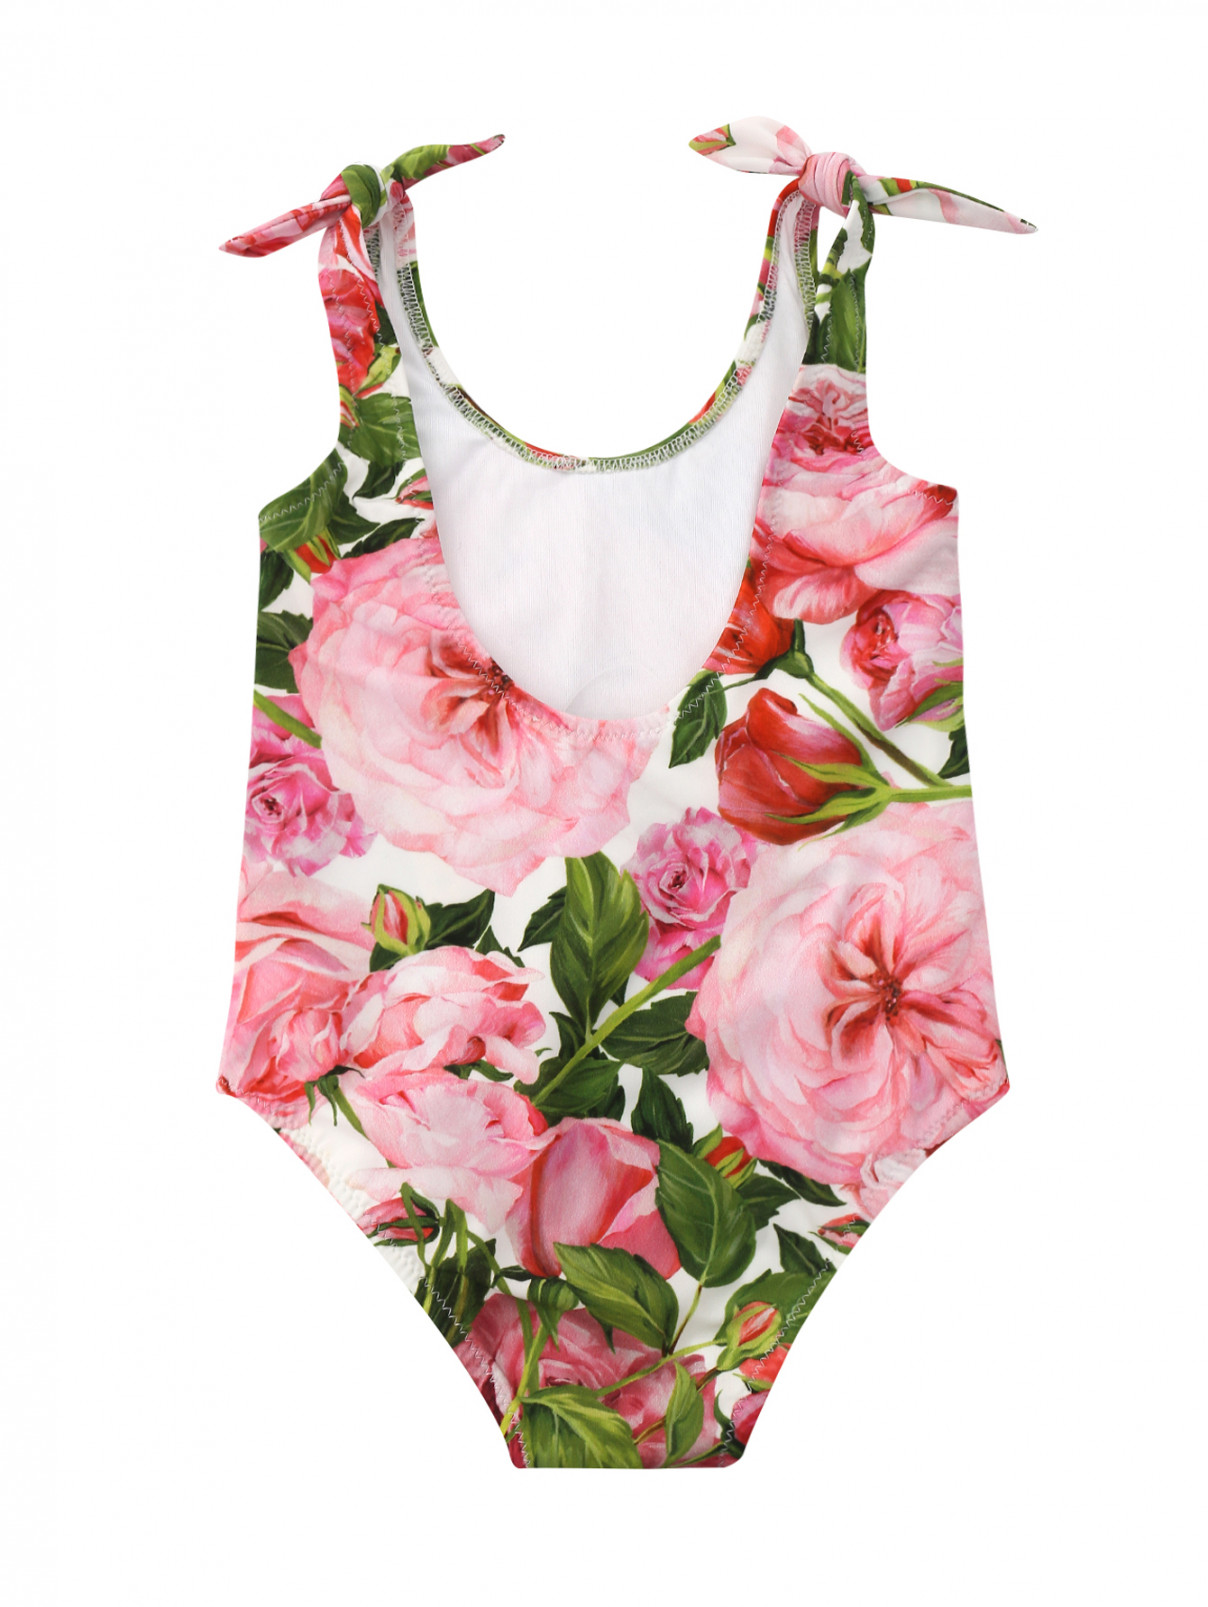 Купальник слитный Dolce & Gabbana  –  Общий вид  – Цвет:  Розовый